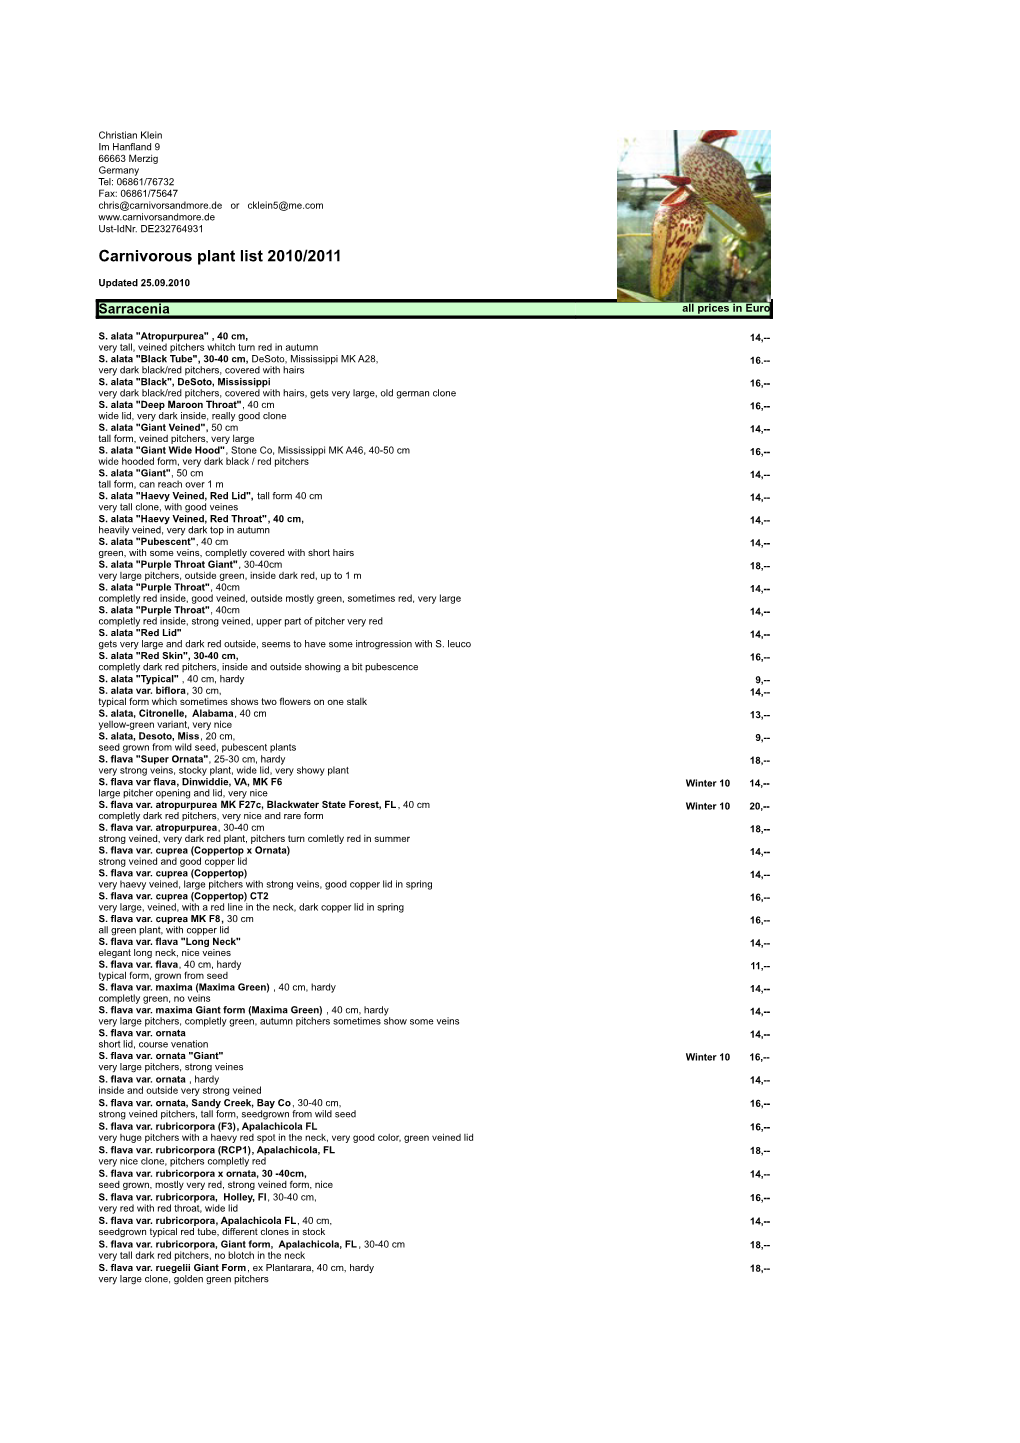 Carnivorous Plant List 2010/2011